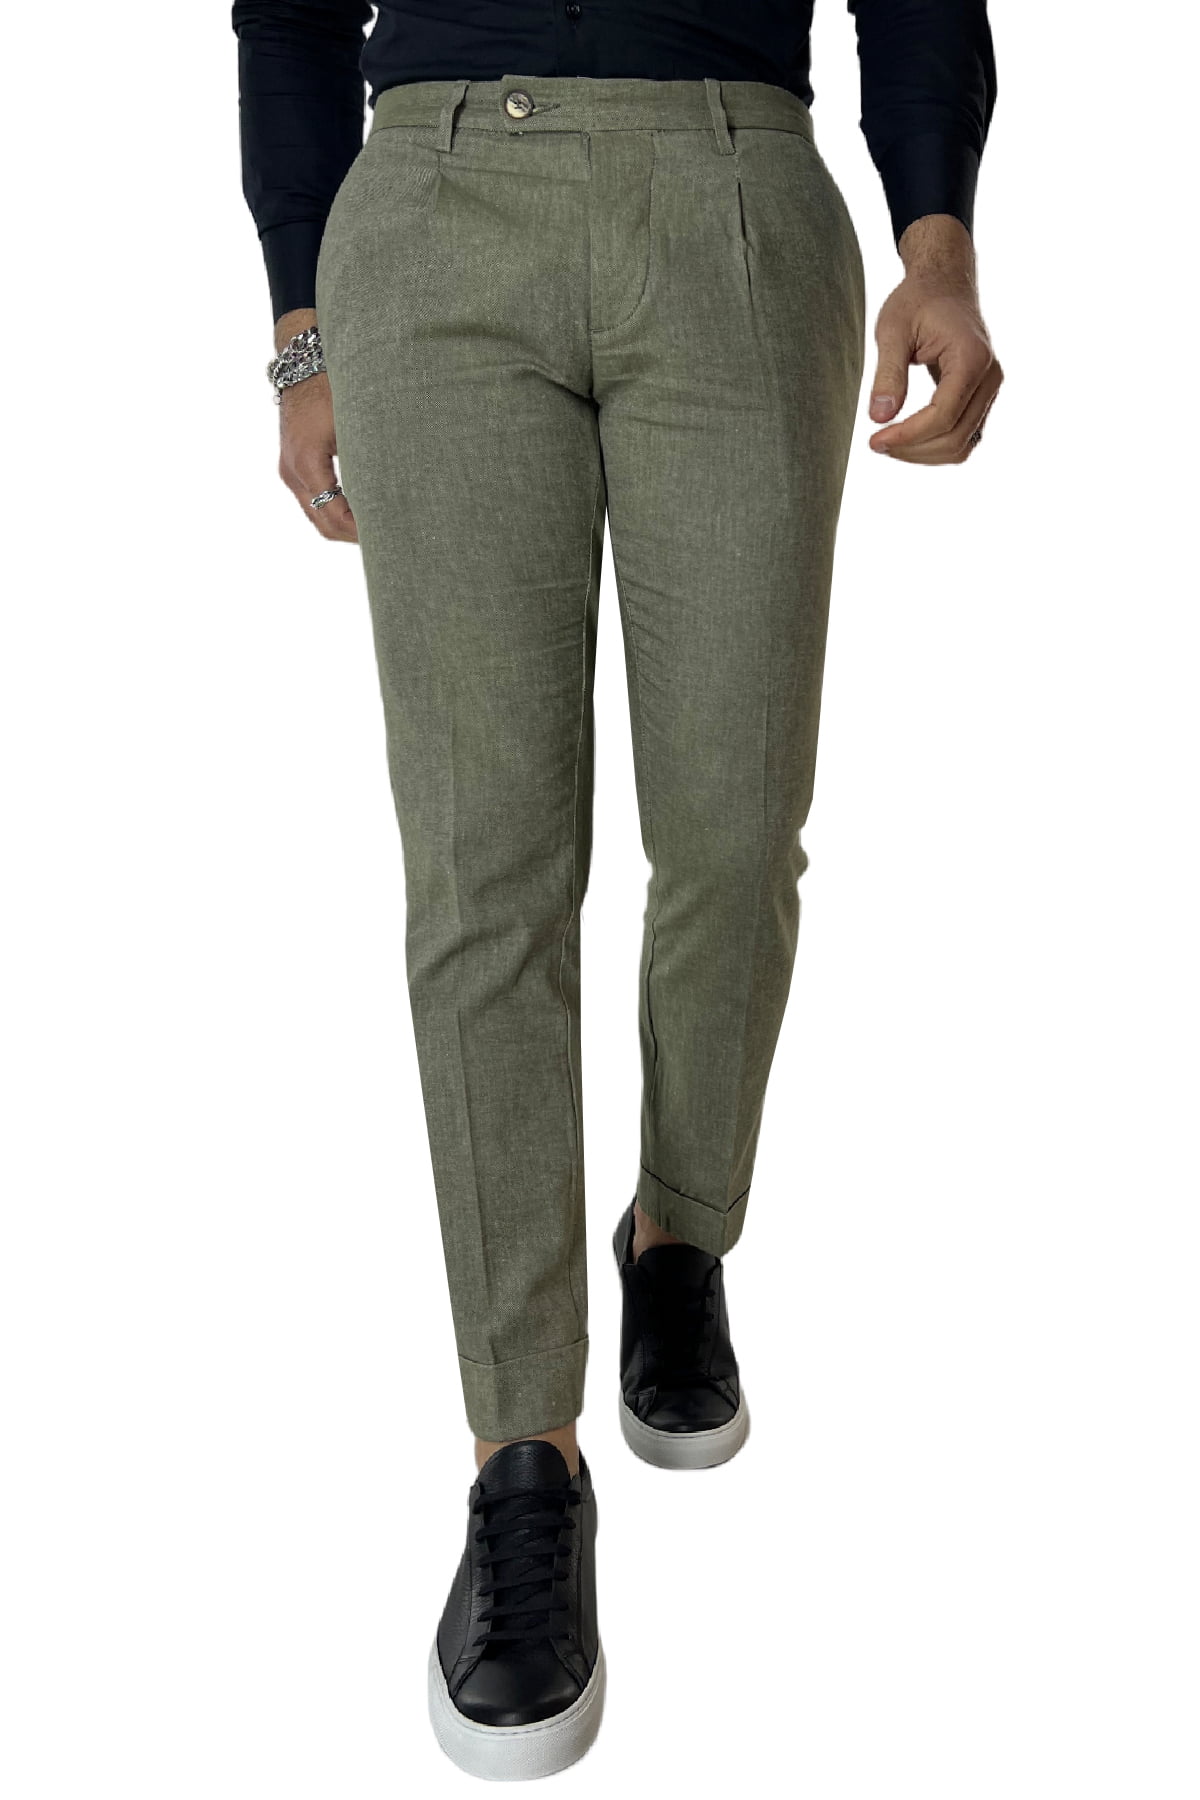 Pantalone uomo lino verde con una pence tasca america made in italy